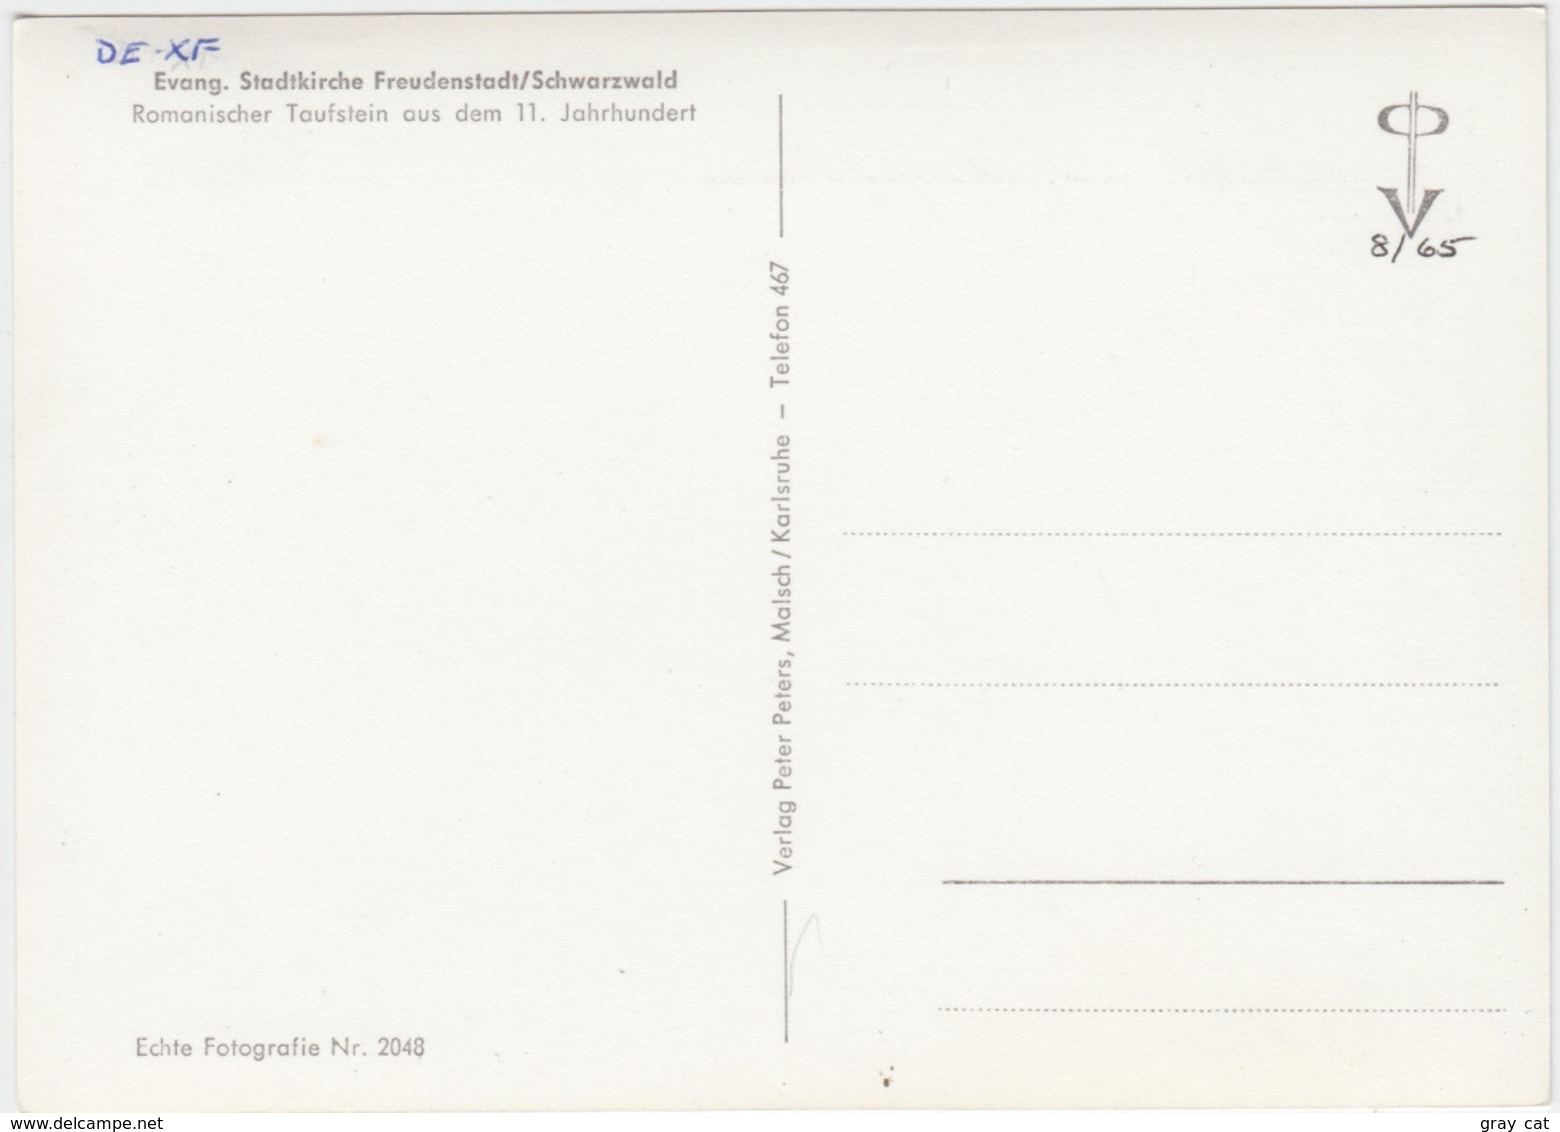 Romanischer Taufstein Aus Dem 11 Jahrhundert, Unused Postcard [21397] - Freudenstadt